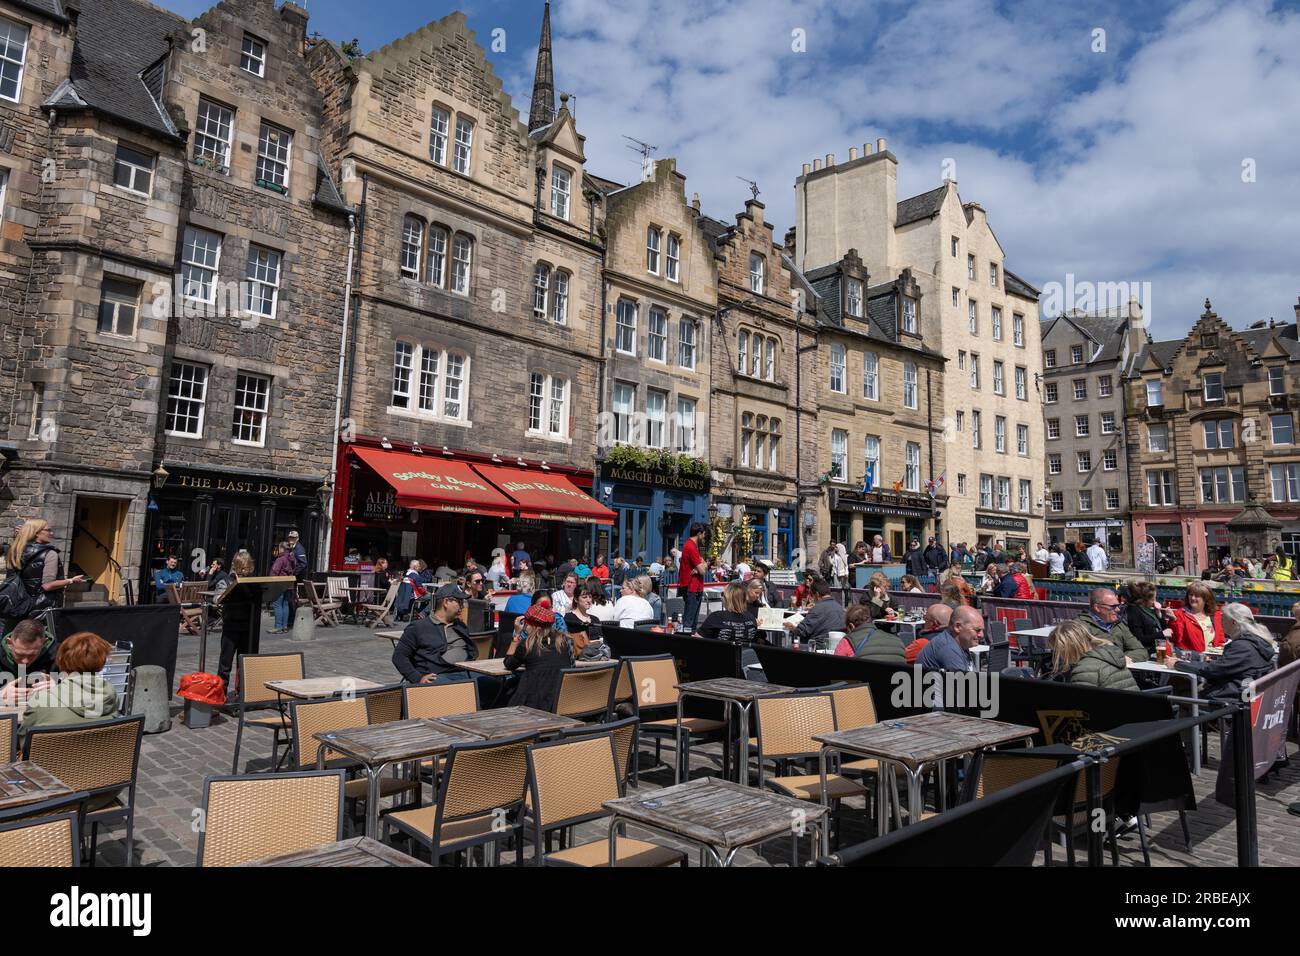 Stadt Edinburgh, Schottland, Großbritannien, Menschen an Restauranttischen in der beliebten Grassmarket Gegend, lebendiger historischer Marktplatz mit Bars, Pubs und Restaurants Stockfoto